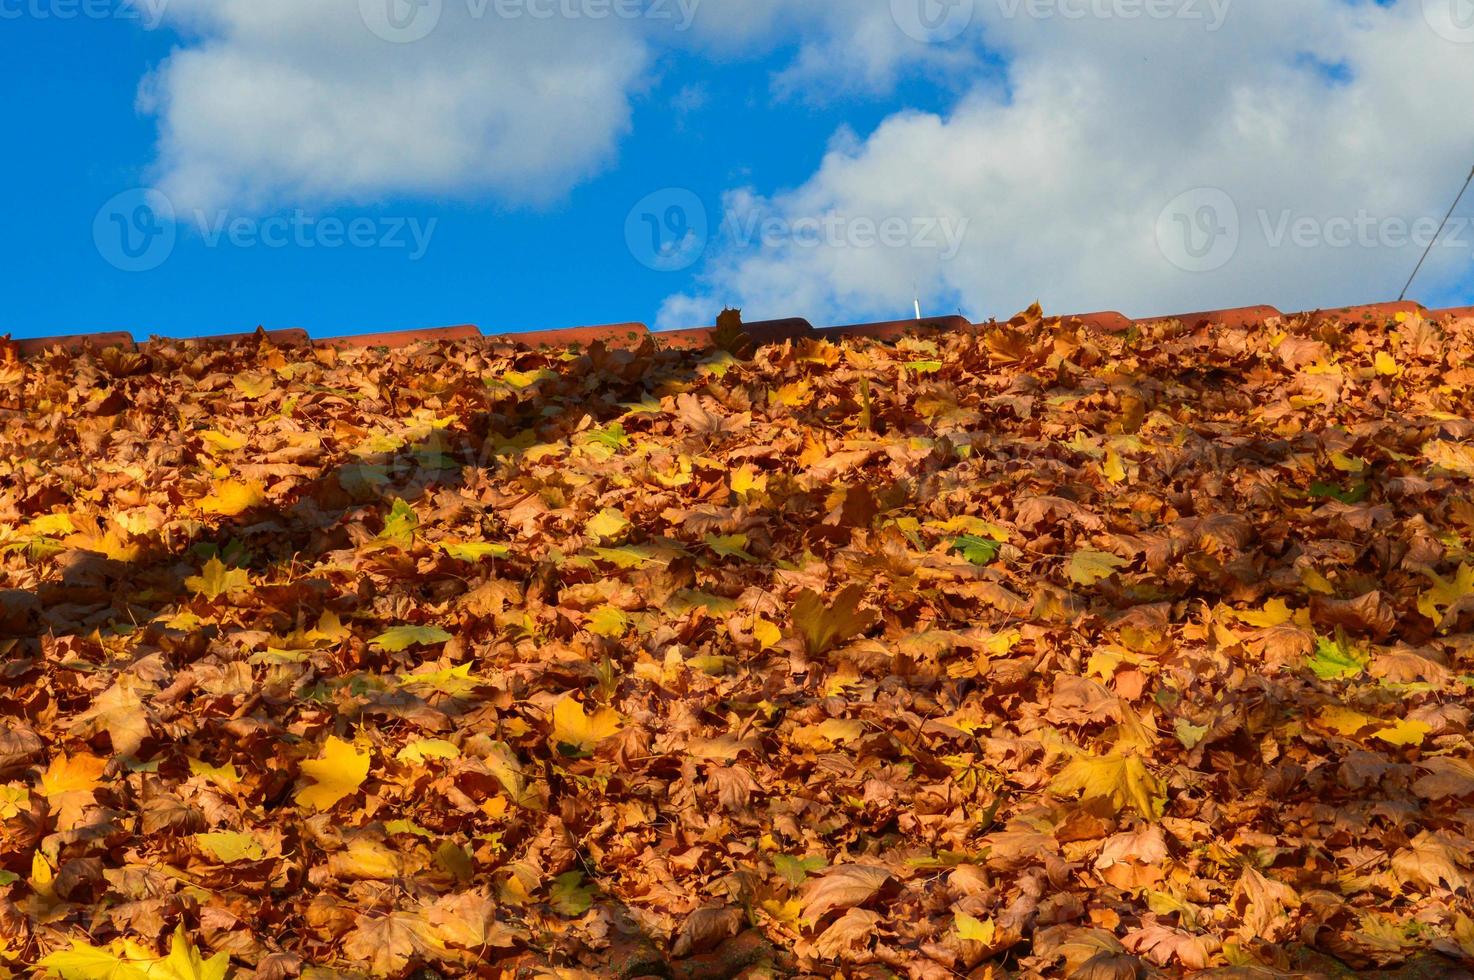 mooi hellend hellend tregolnaya dak van de huis van rood tegels gedekt met een laag van herfst geel gedaald bladeren. de achtergrond foto